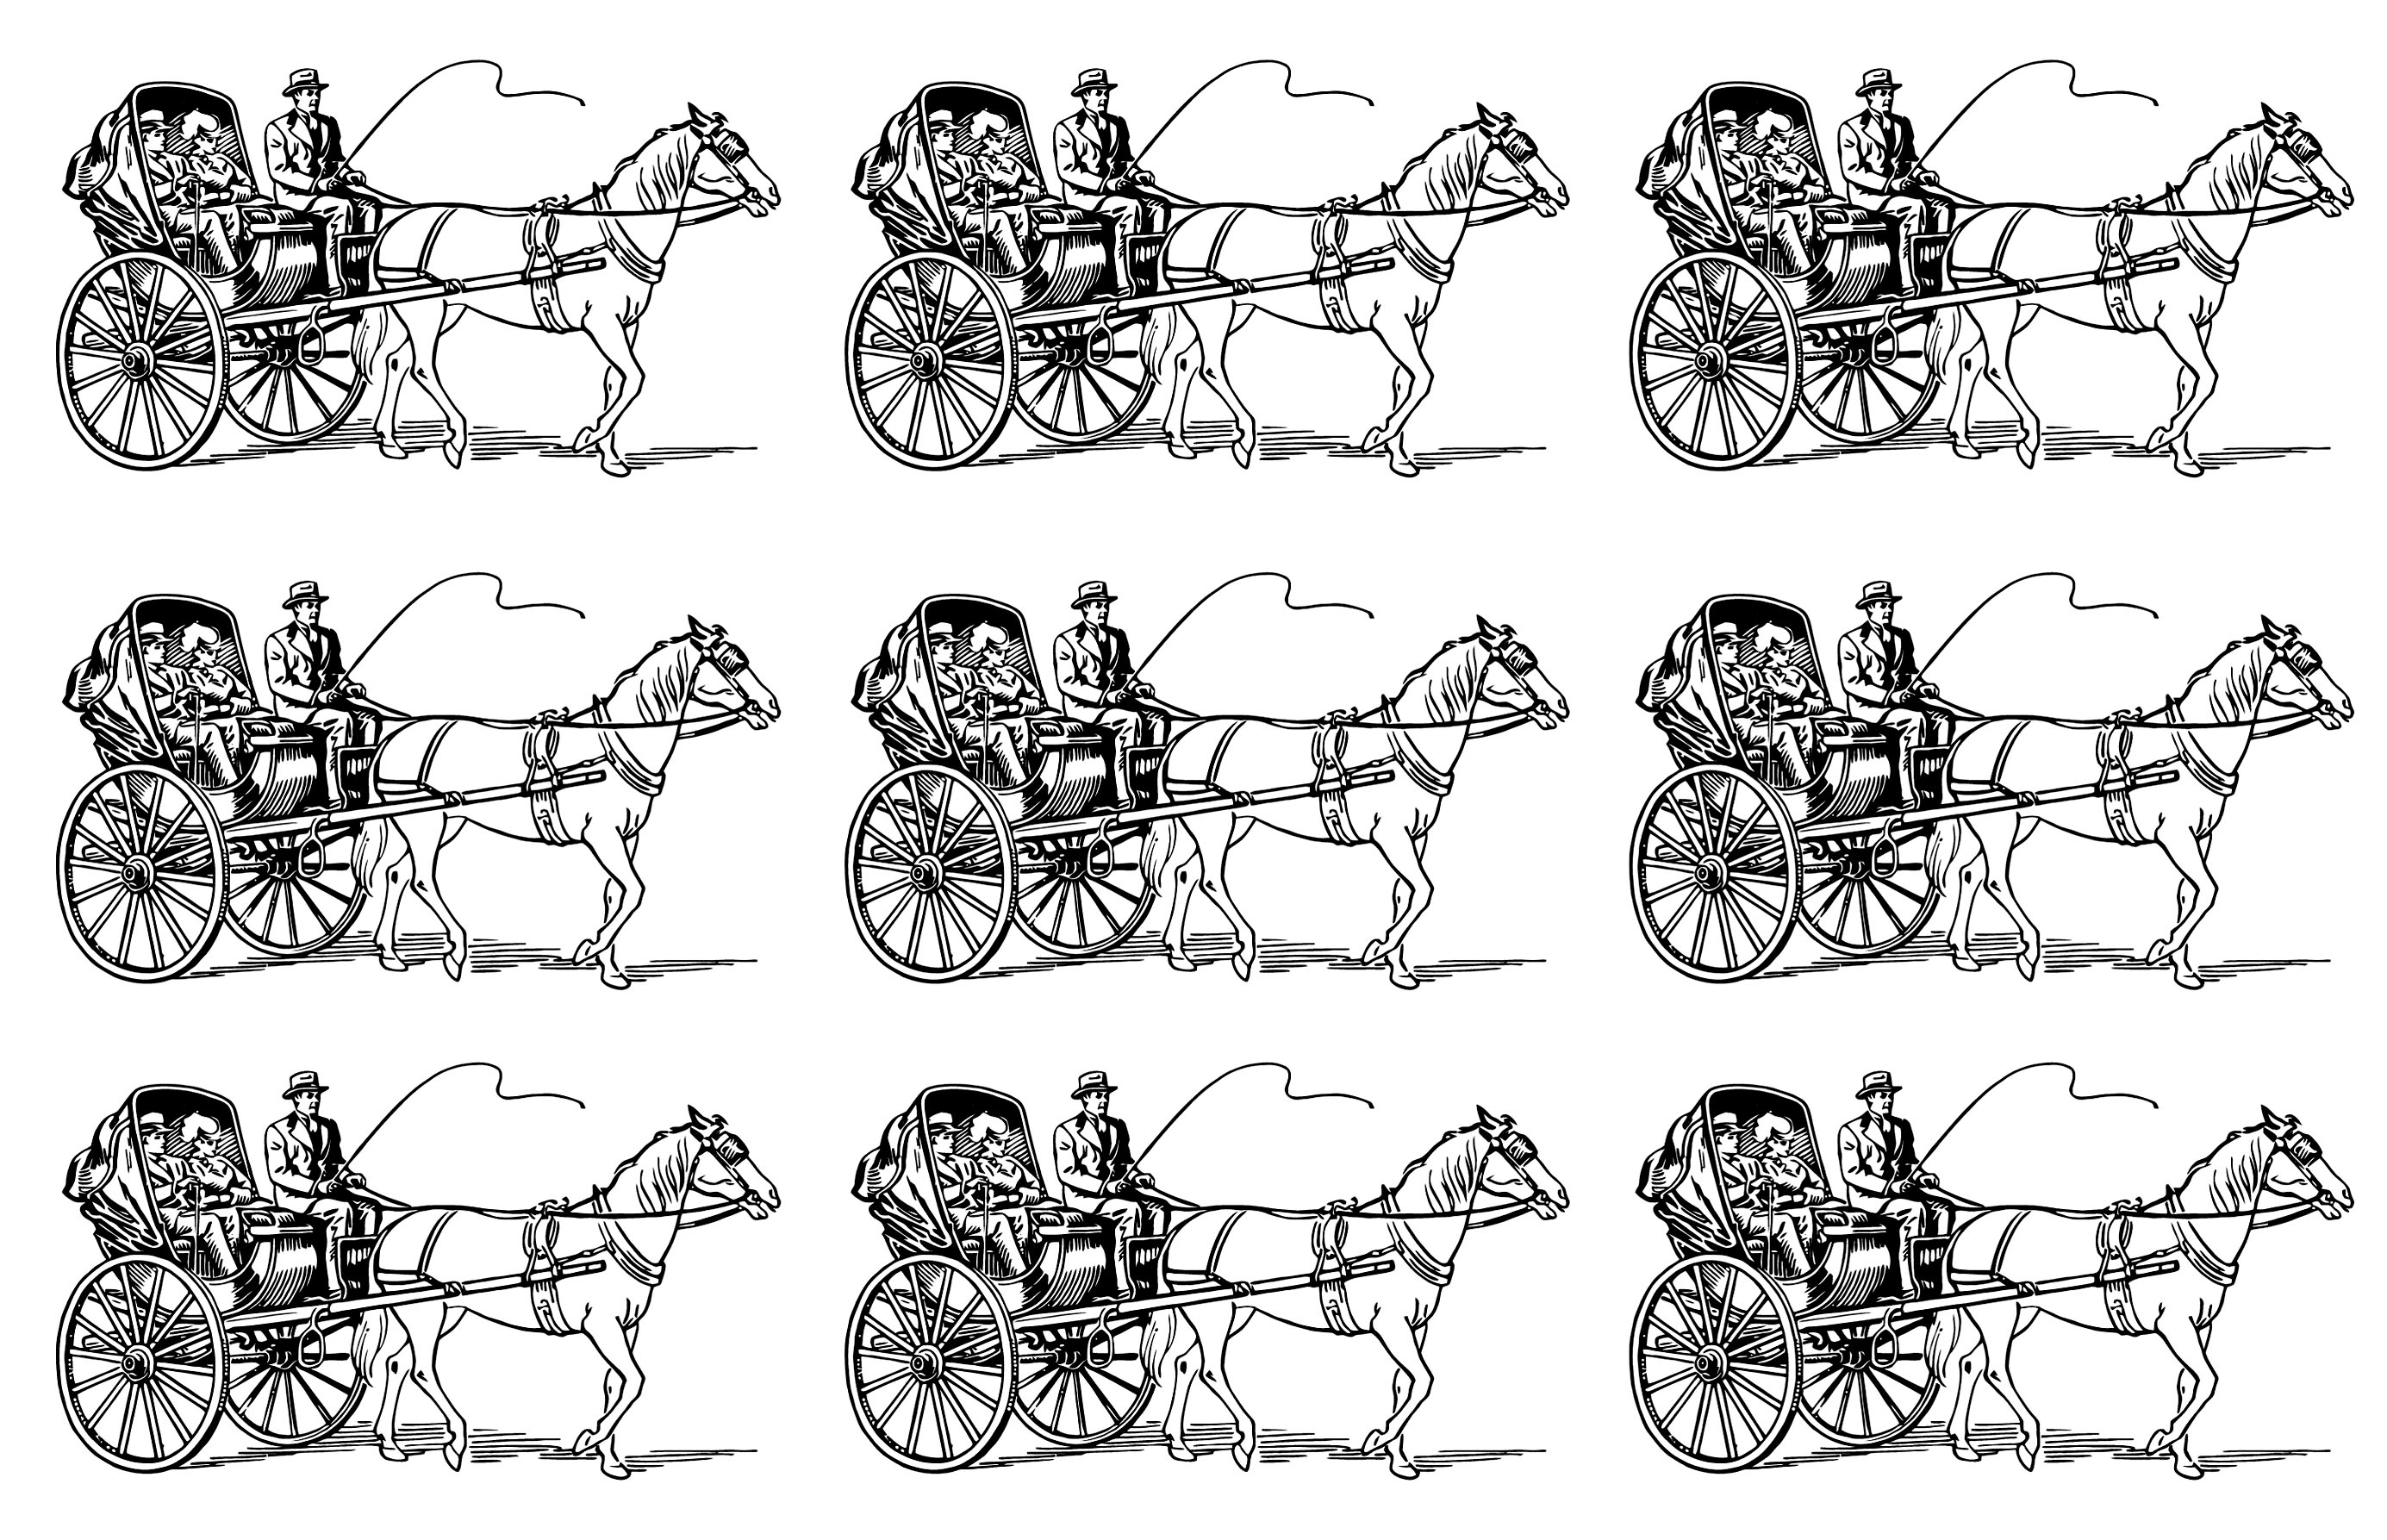 Visual en mosaico muy vintage de un carro tirado por caballos que transporta a un hombre y una mujer. ¡Colorea este carruaje de 6 formas diferentes!